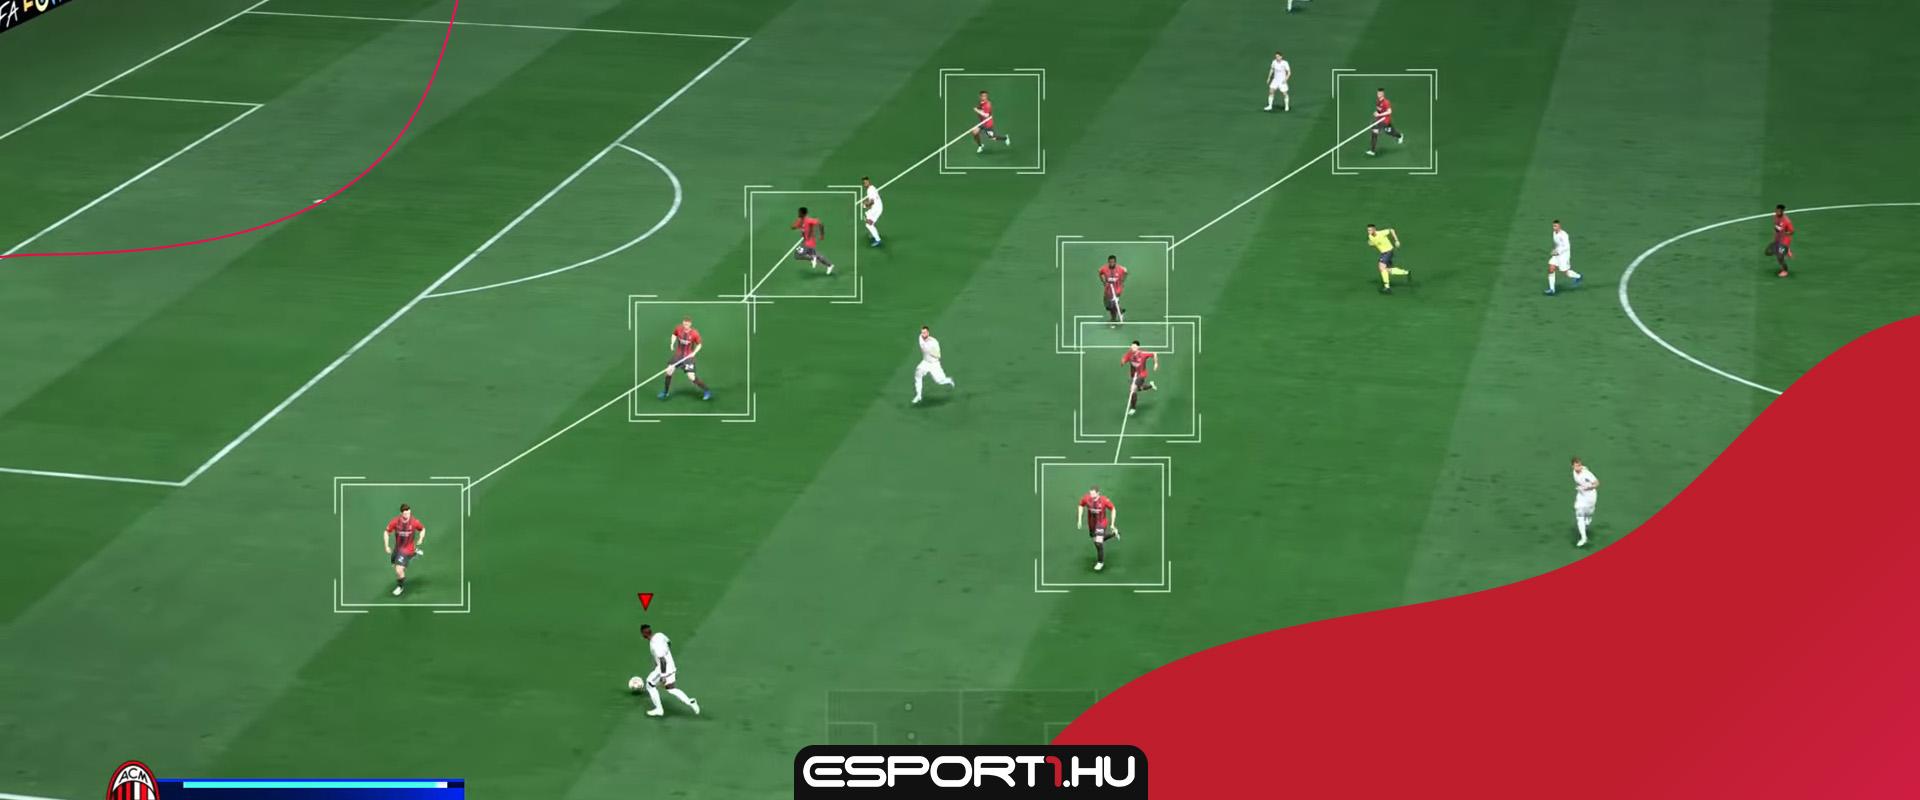 Az EA végre megoldja a FIFA 22-ben a védőket érintő problémát